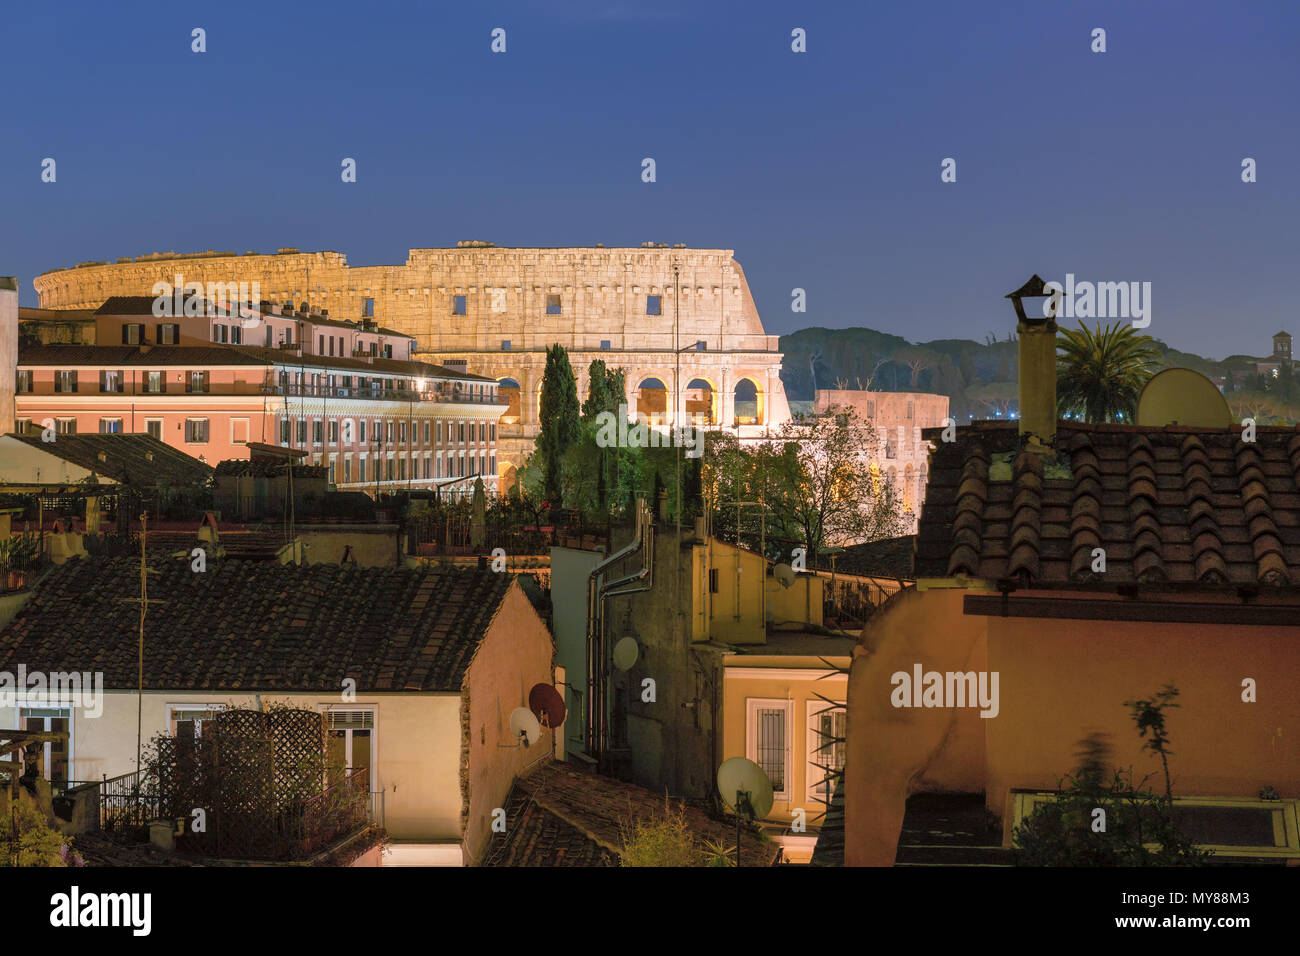 Vue de la nuit de Rome près du Colisée à Rome, Italie. Nuit paysage urbain de Rome. Banque D'Images